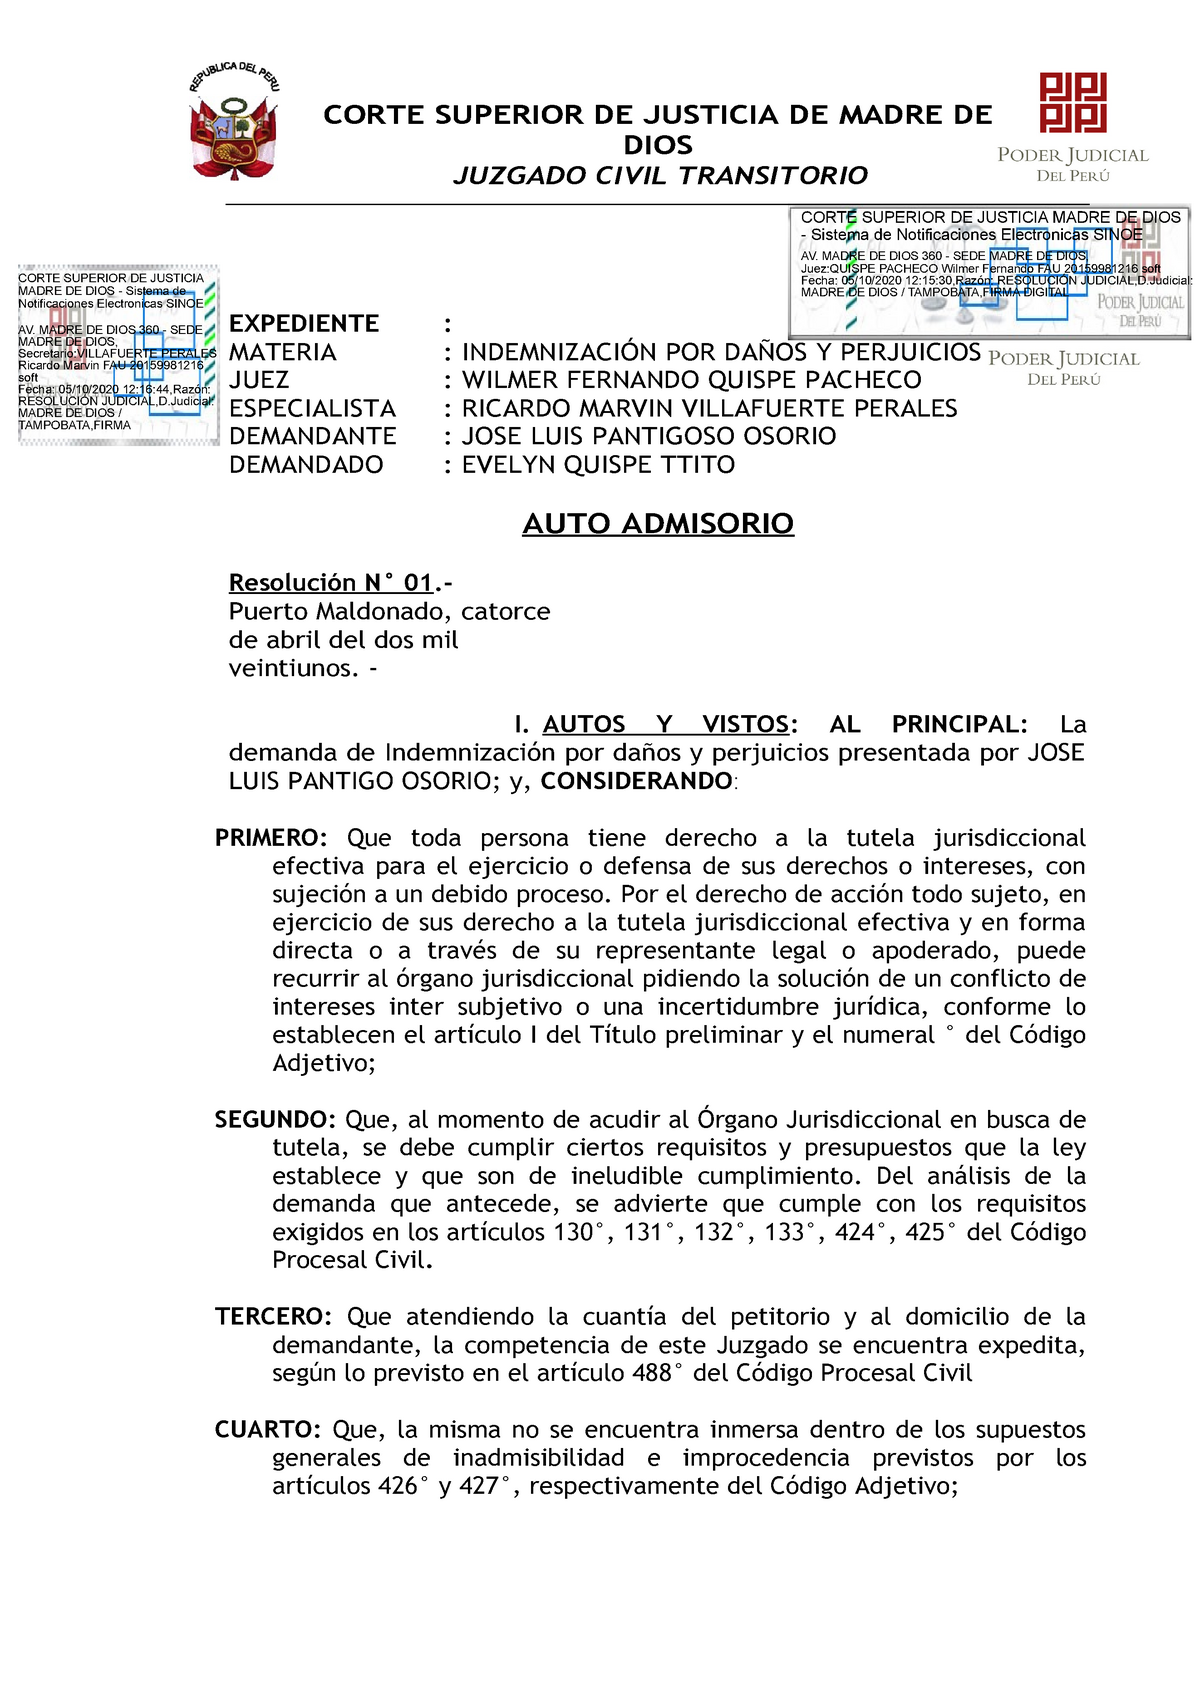 AUTO Admisorio Demanda - CORTE SUPERIOR DE JUSTICIA MADRE DE DIOS Sistema  de Notificaciones - Studocu